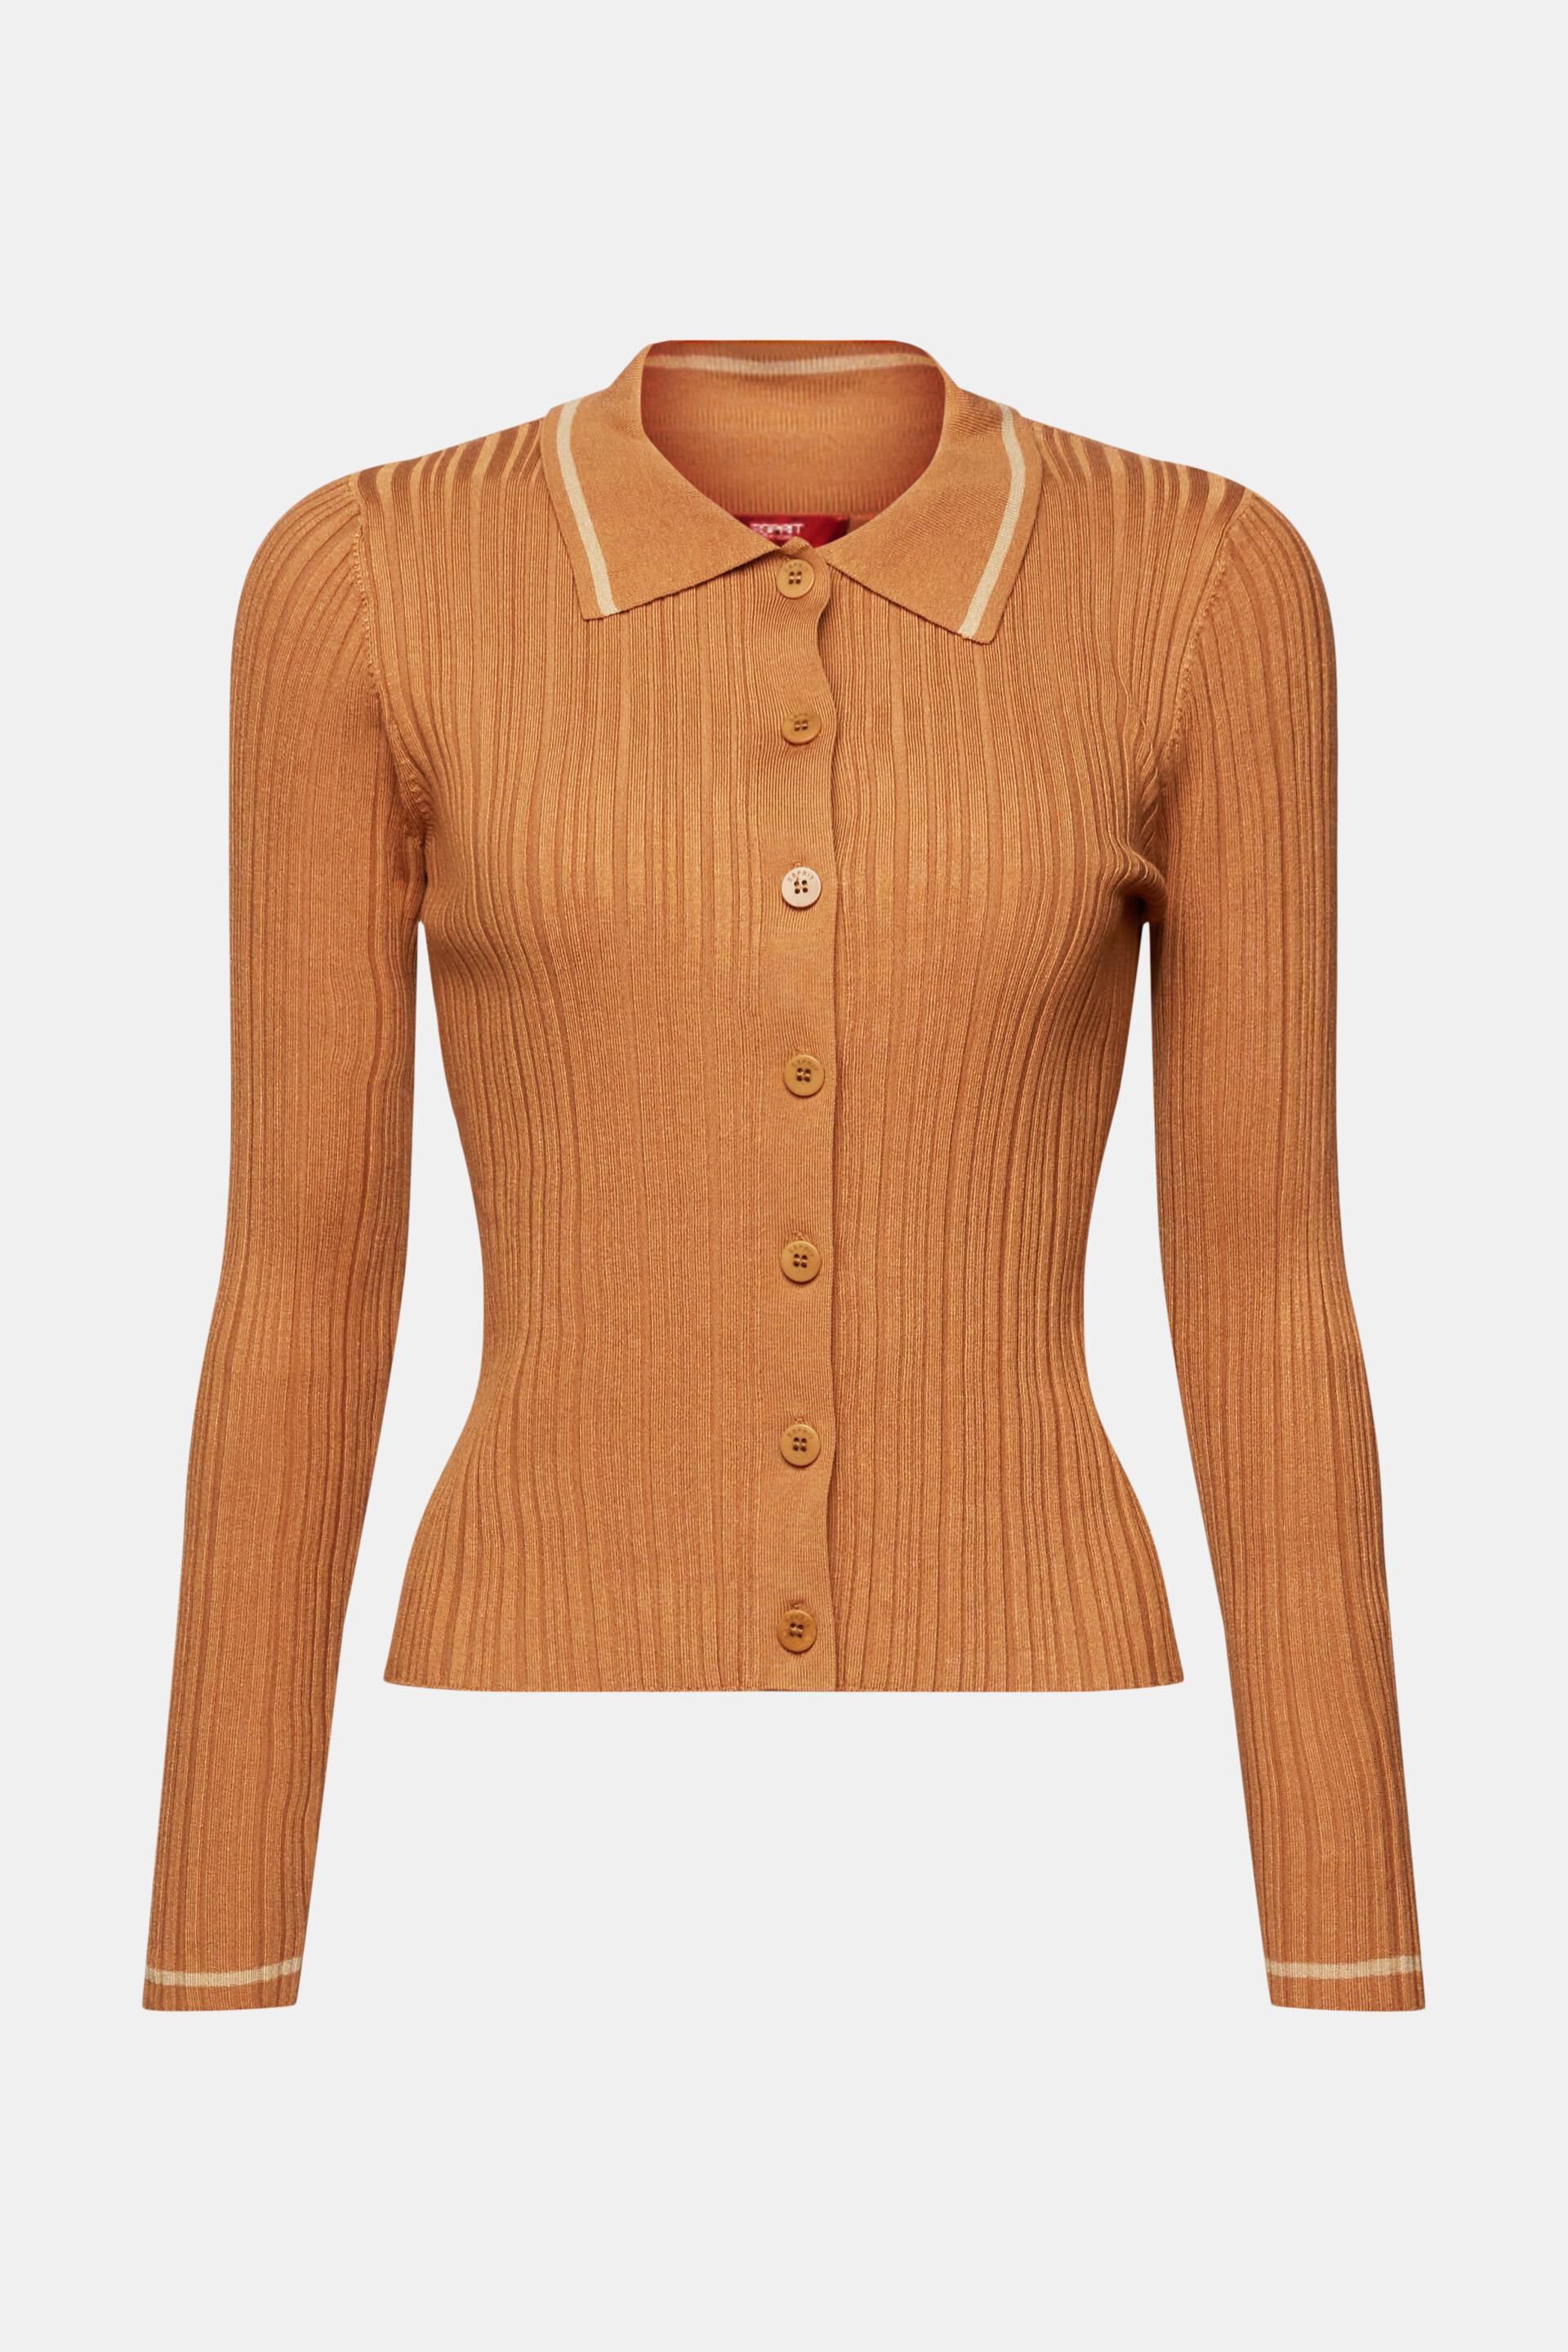 Esprit Damen Poloshirt aus mit Knopfleiste Strick vorne